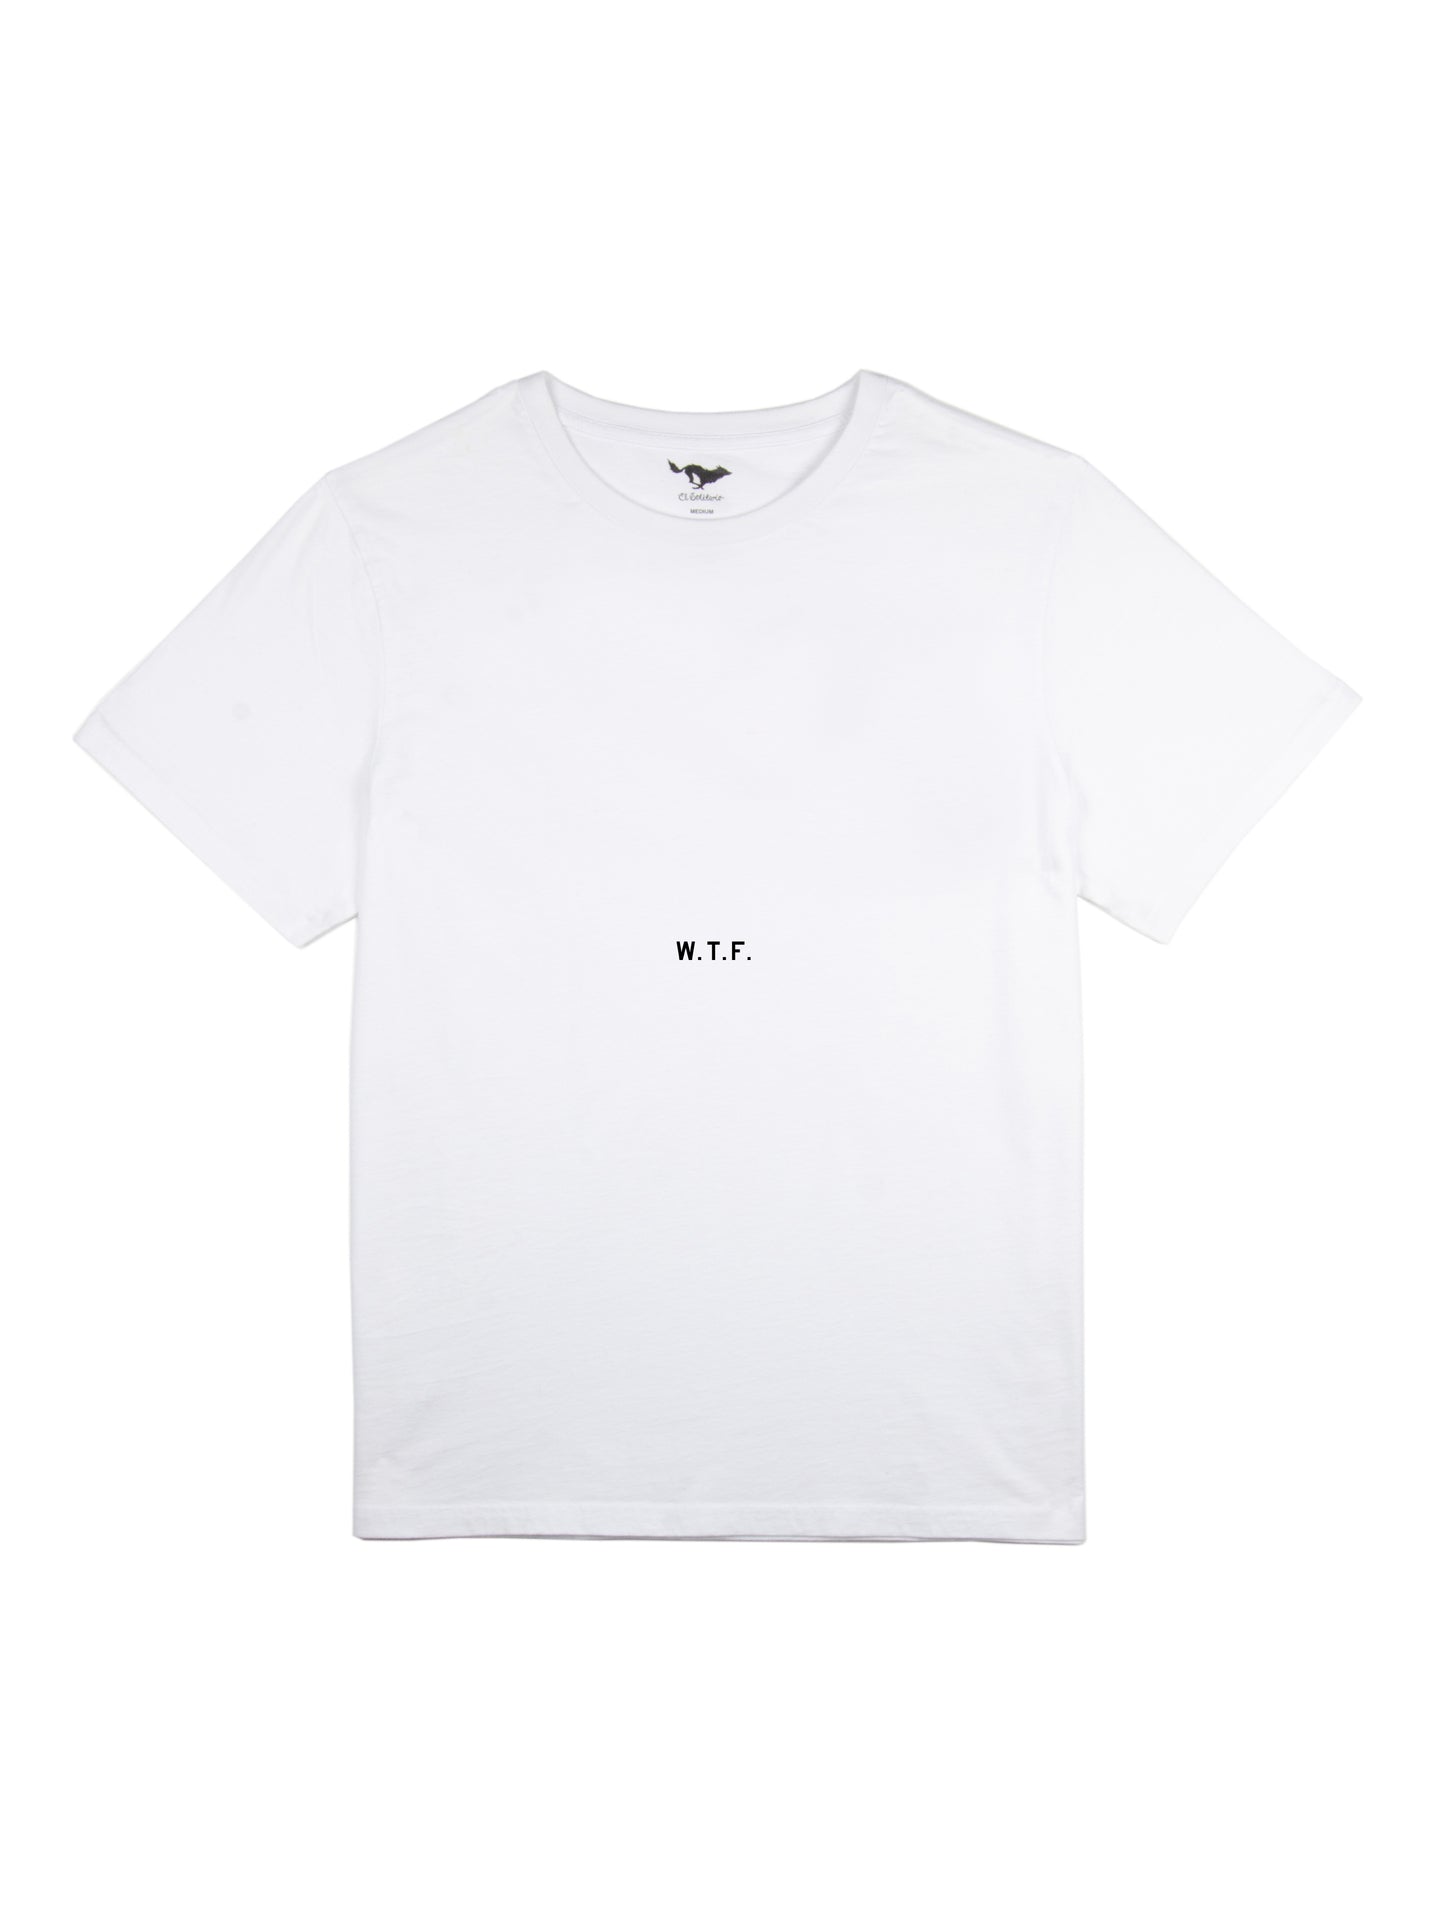 K.I.S.S. White T-Shirt